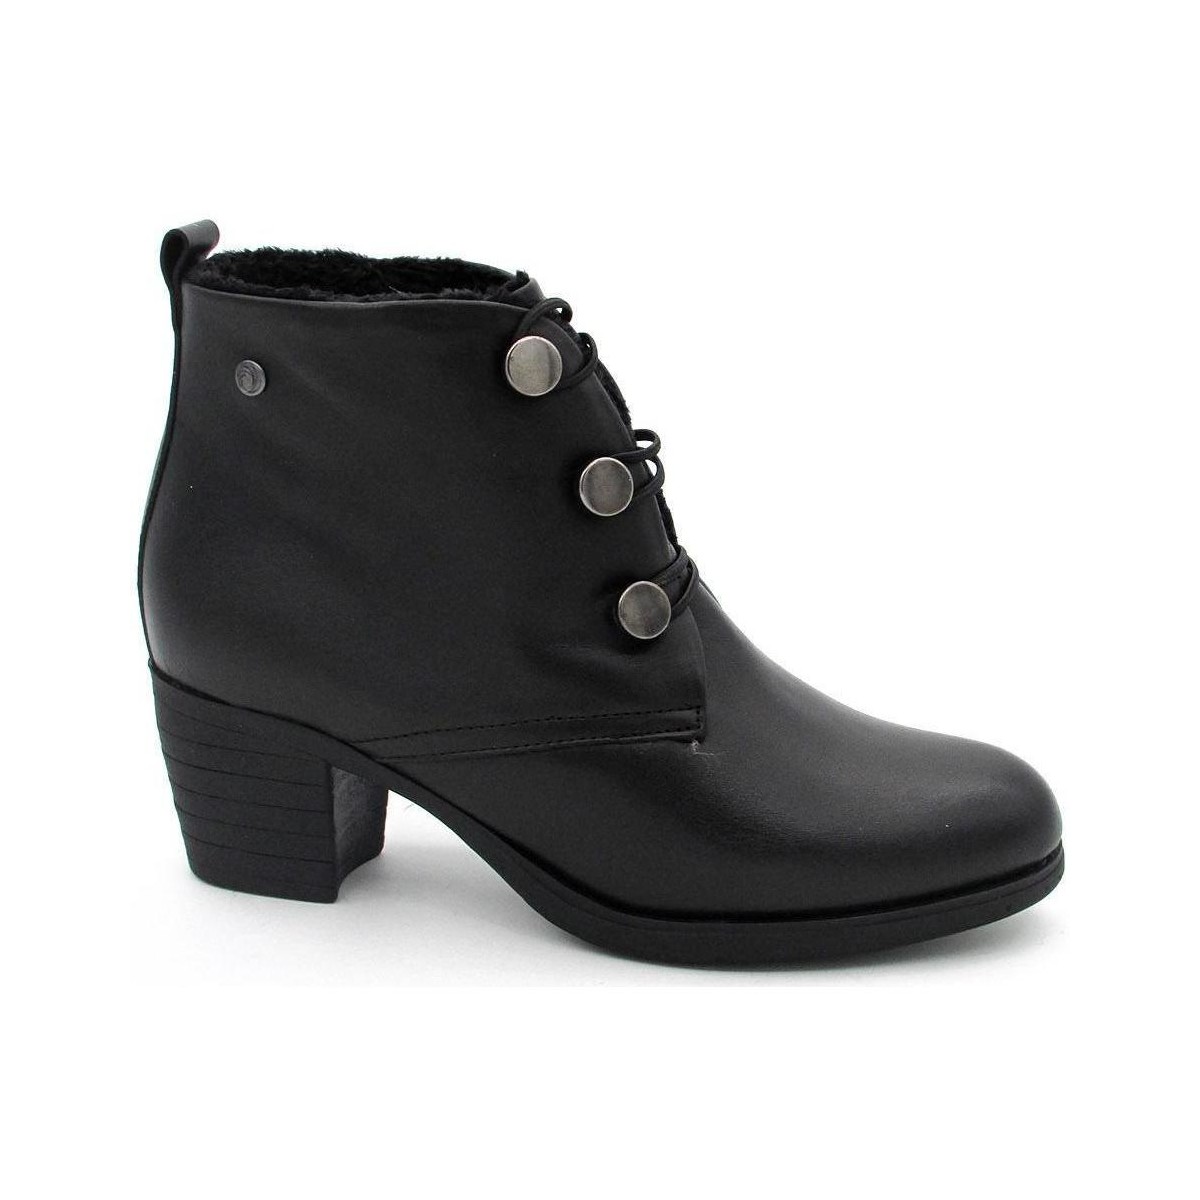 Zapatos Mujer Botines Kaola 6401 Negro